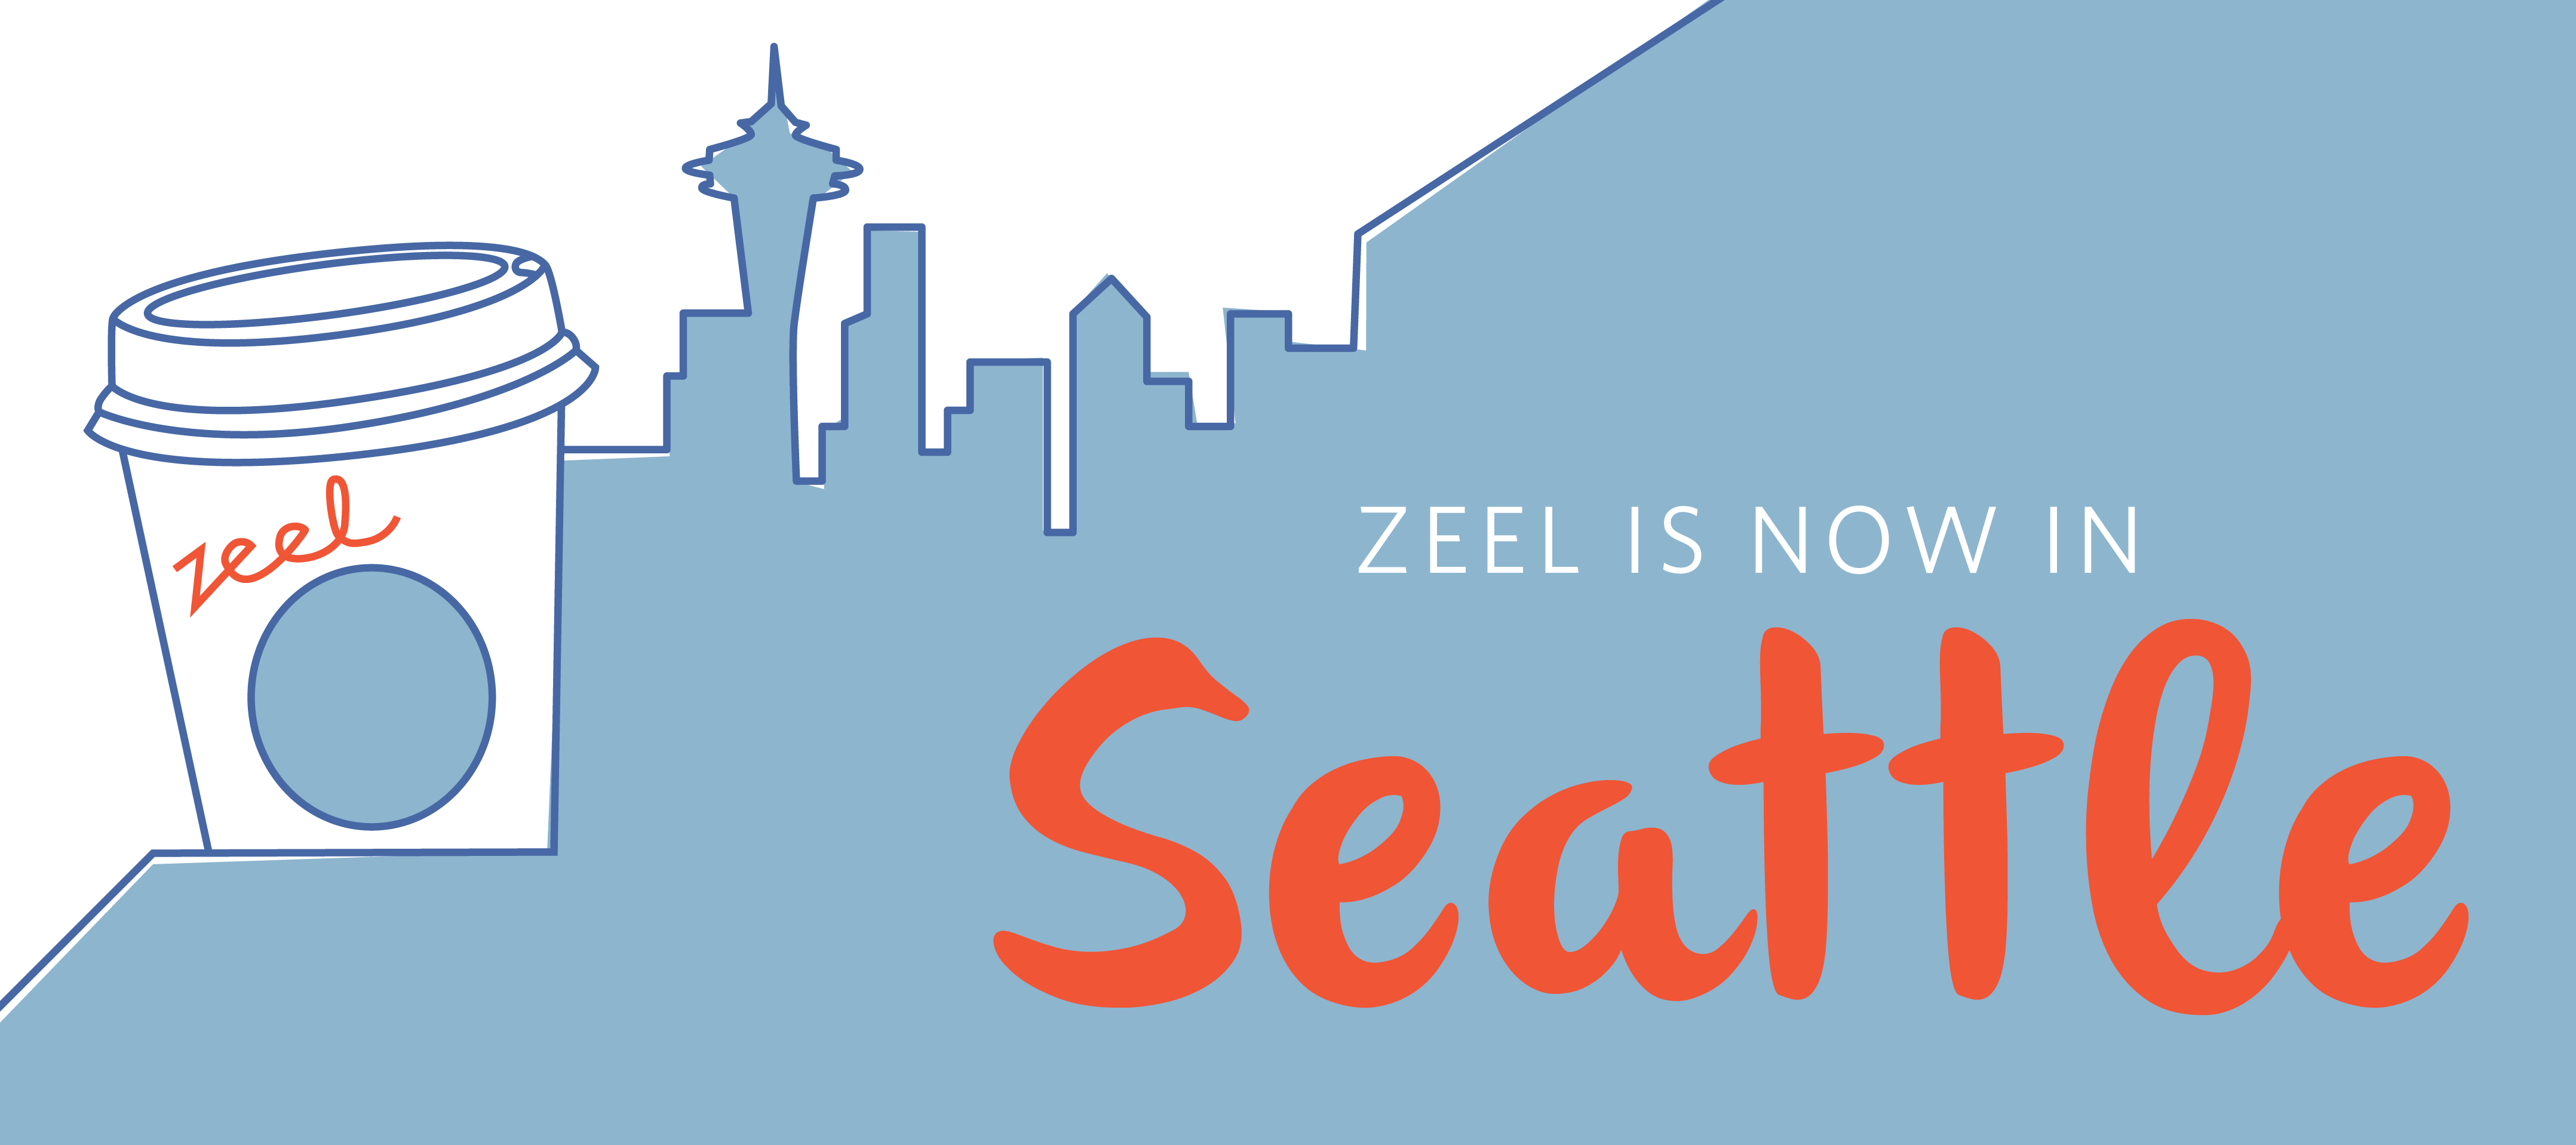 Zeel is now in Seattle, Washington.